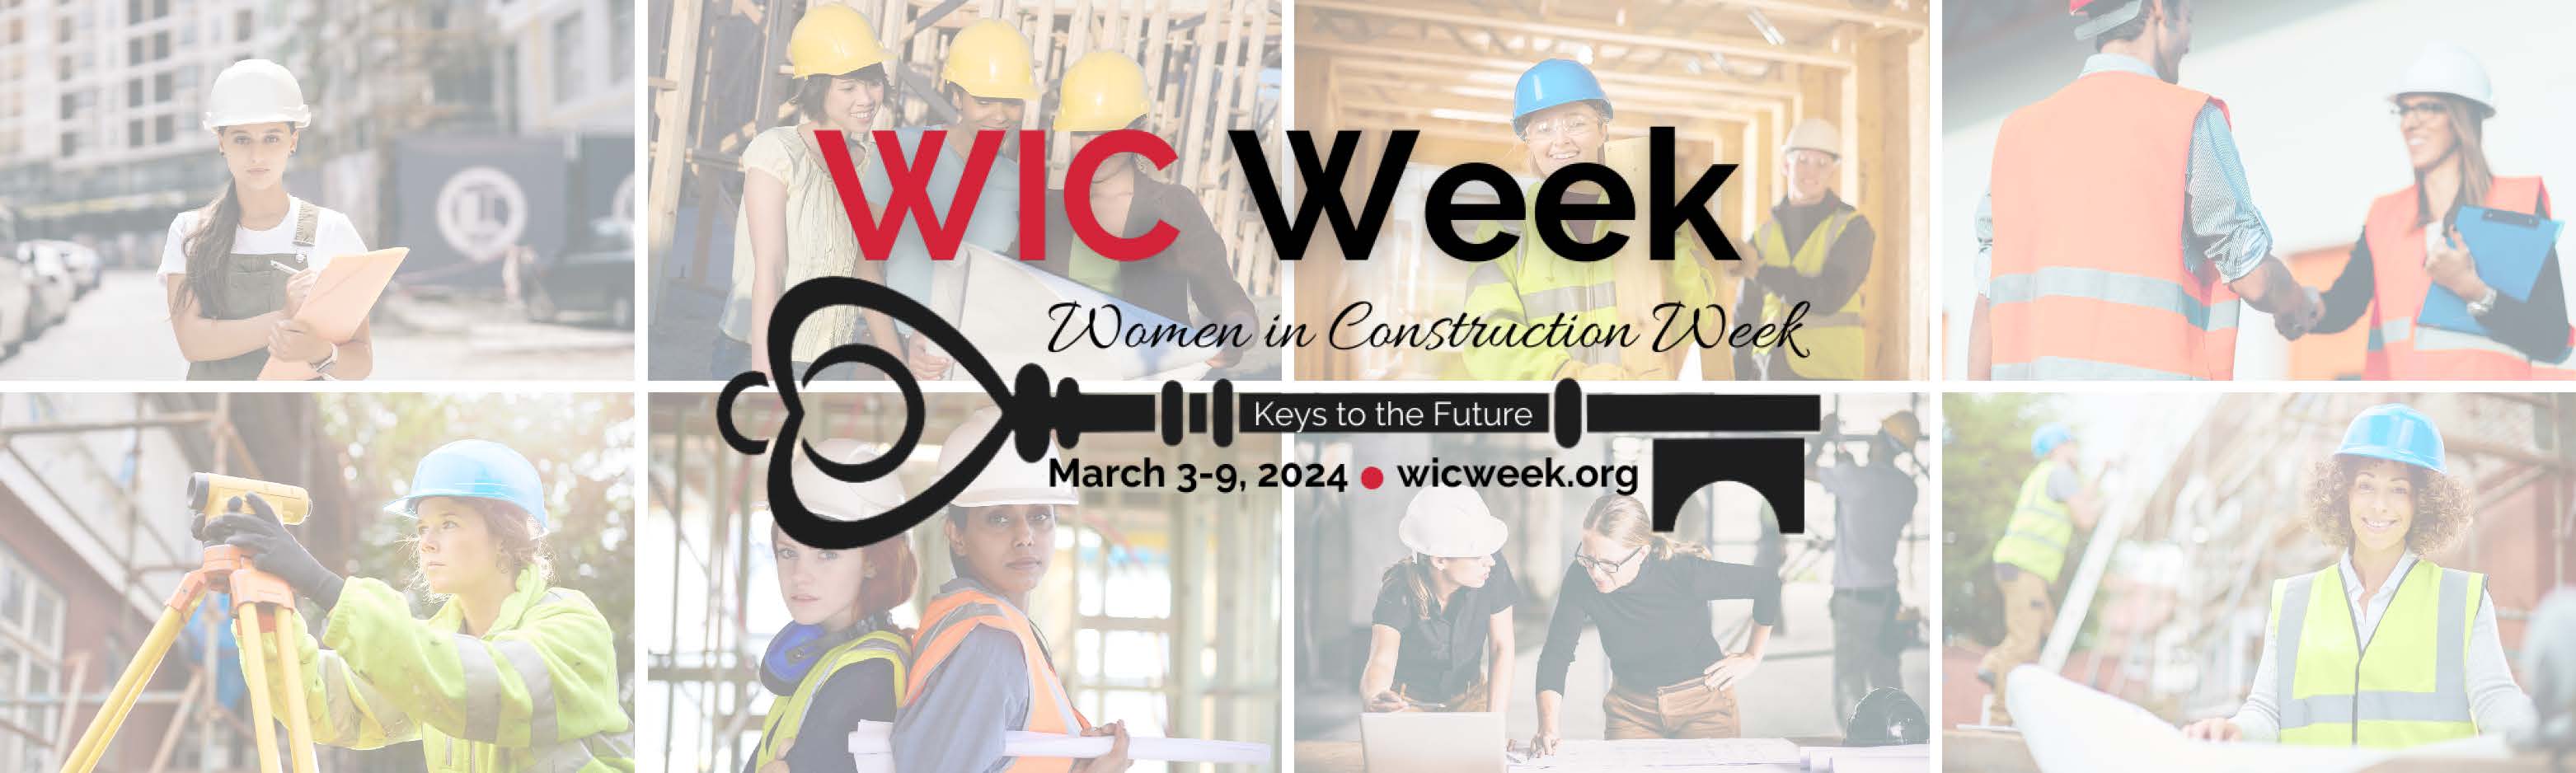 Women in construction week